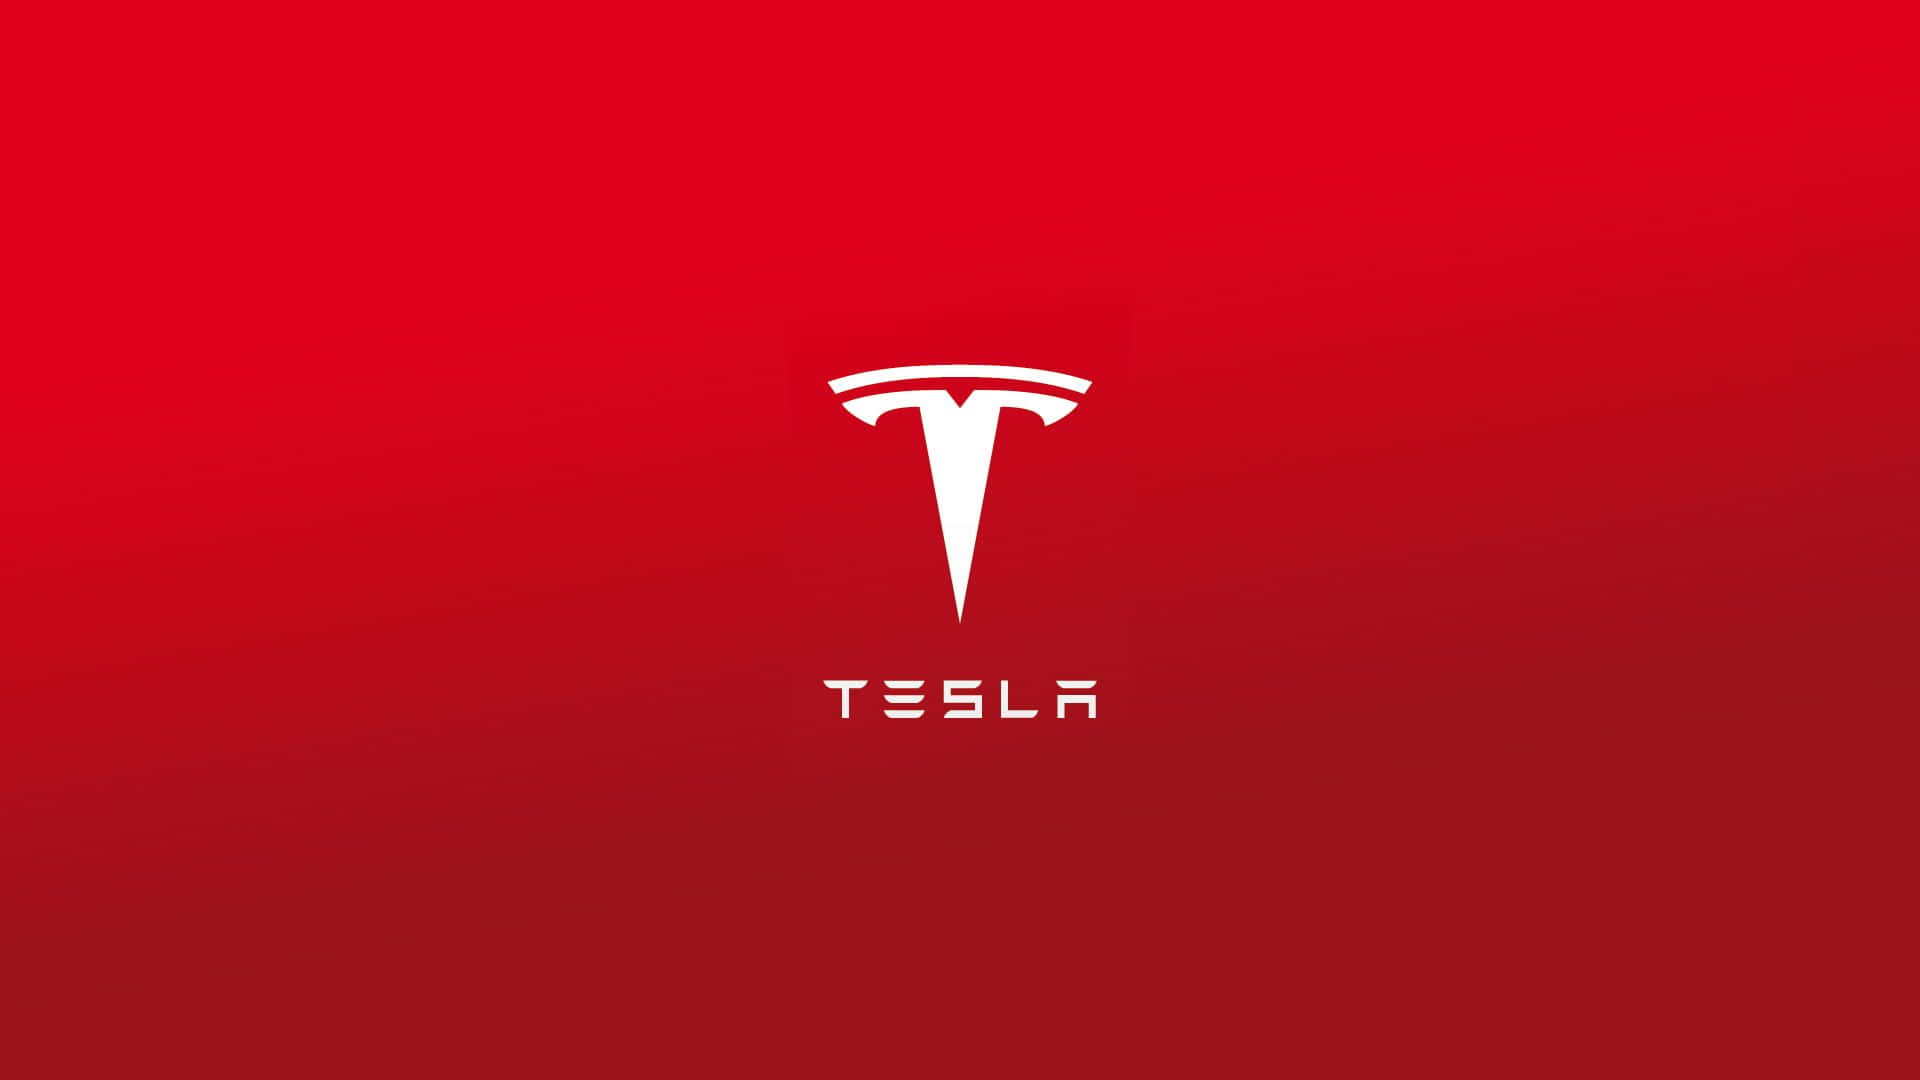 Teslafans Feiern Die Zukunft Der Elektrofahrzeuge.